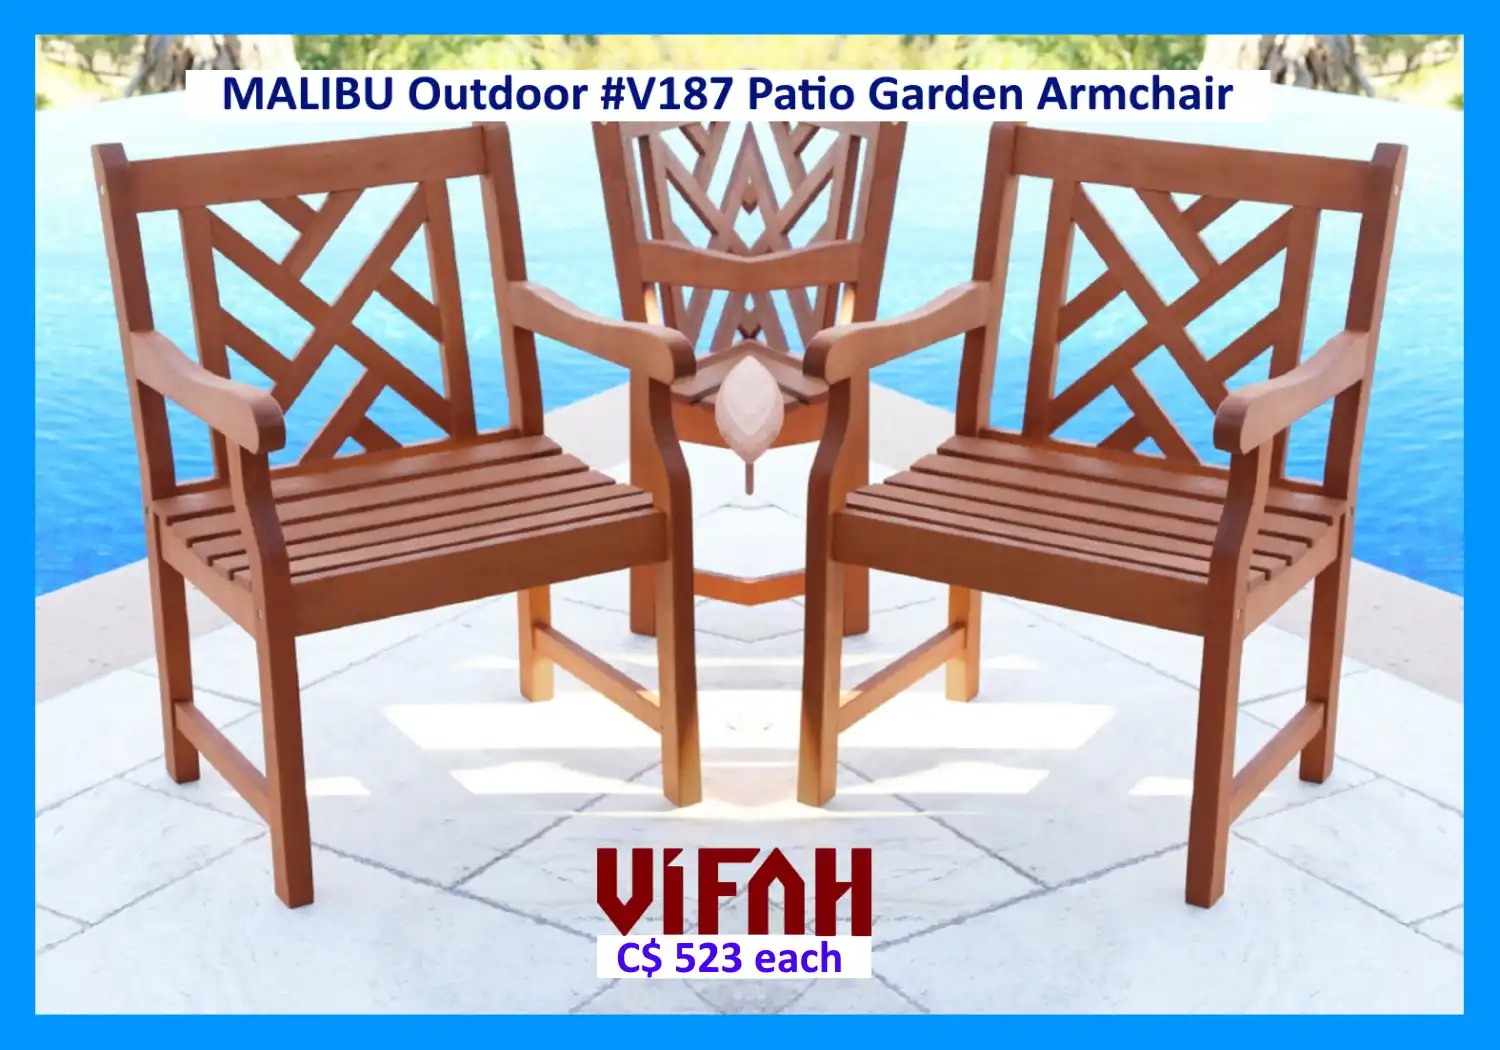 MALIBU Outdoor #V187 Patio Garden Armchair